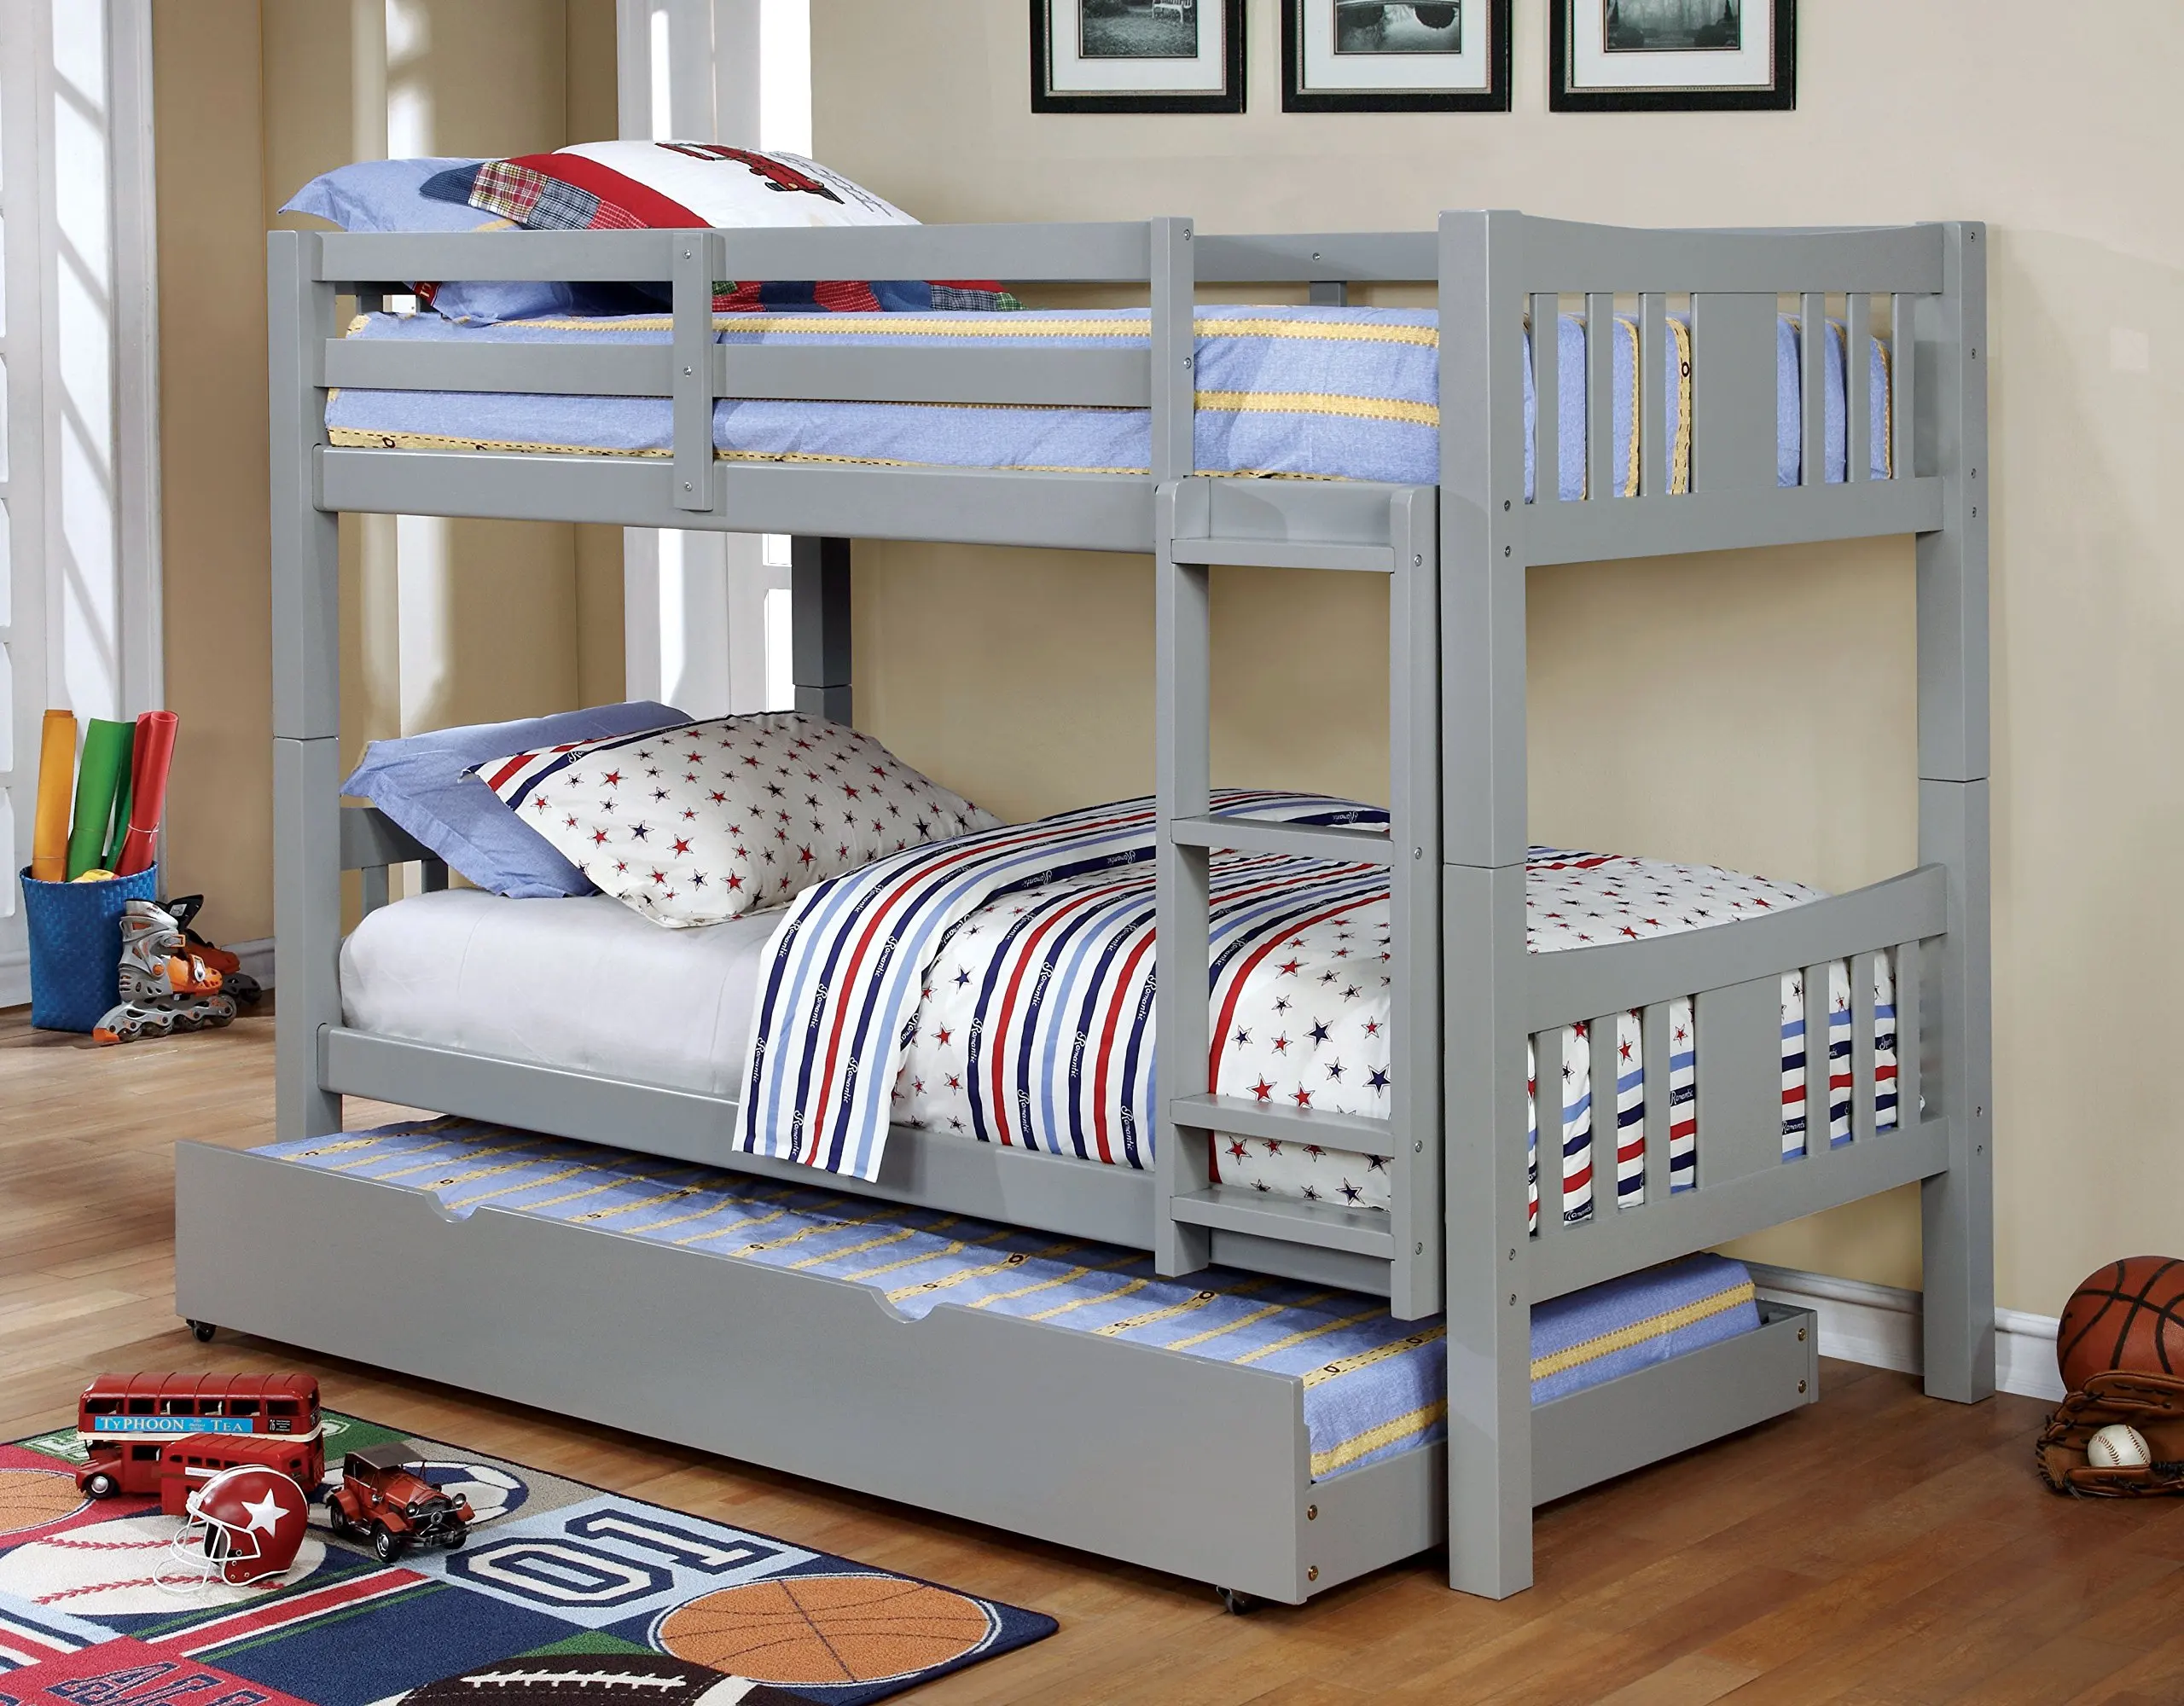 трехъярусные кровати для детей металлические